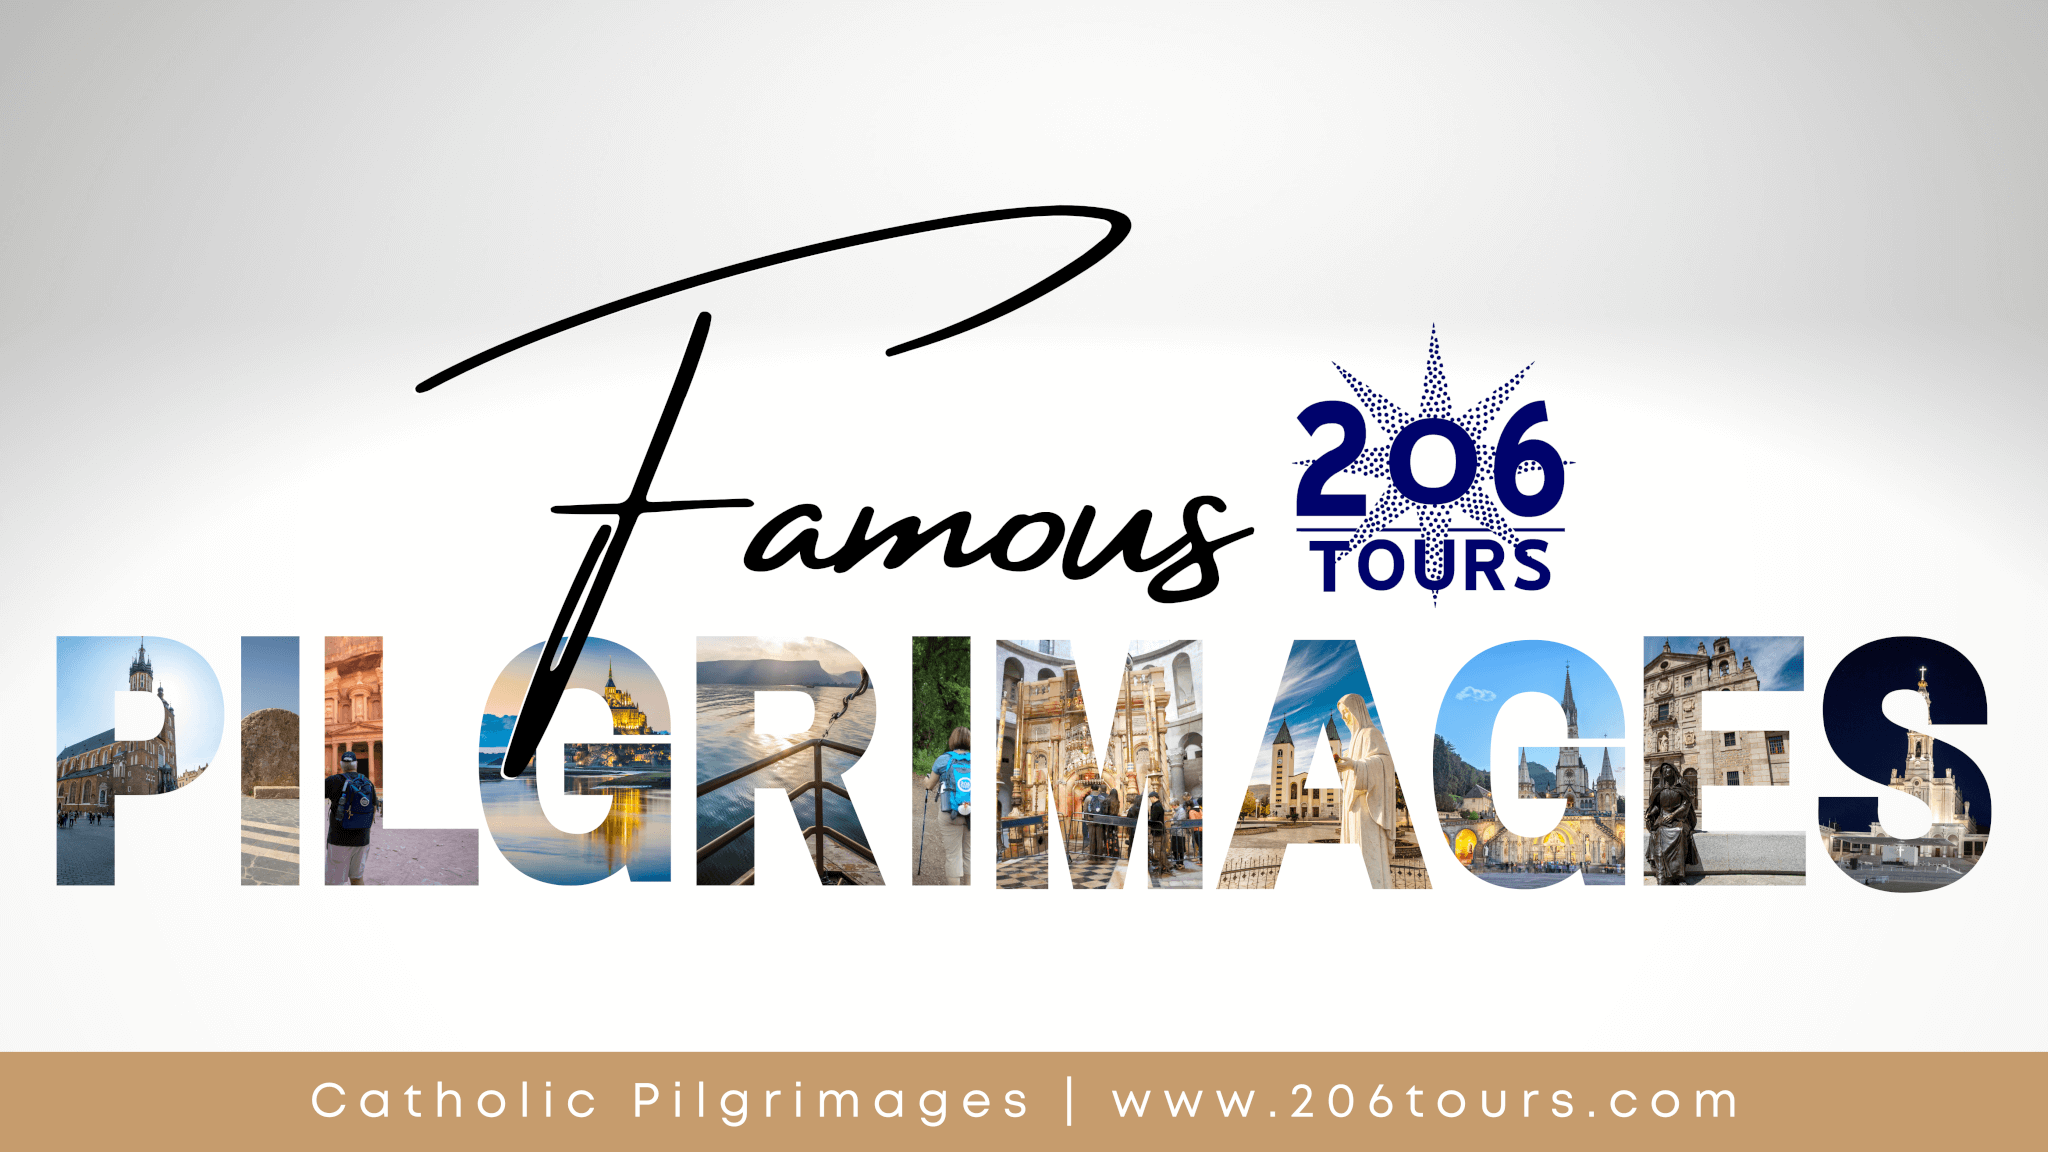 famous-pilgrimages-206-tours